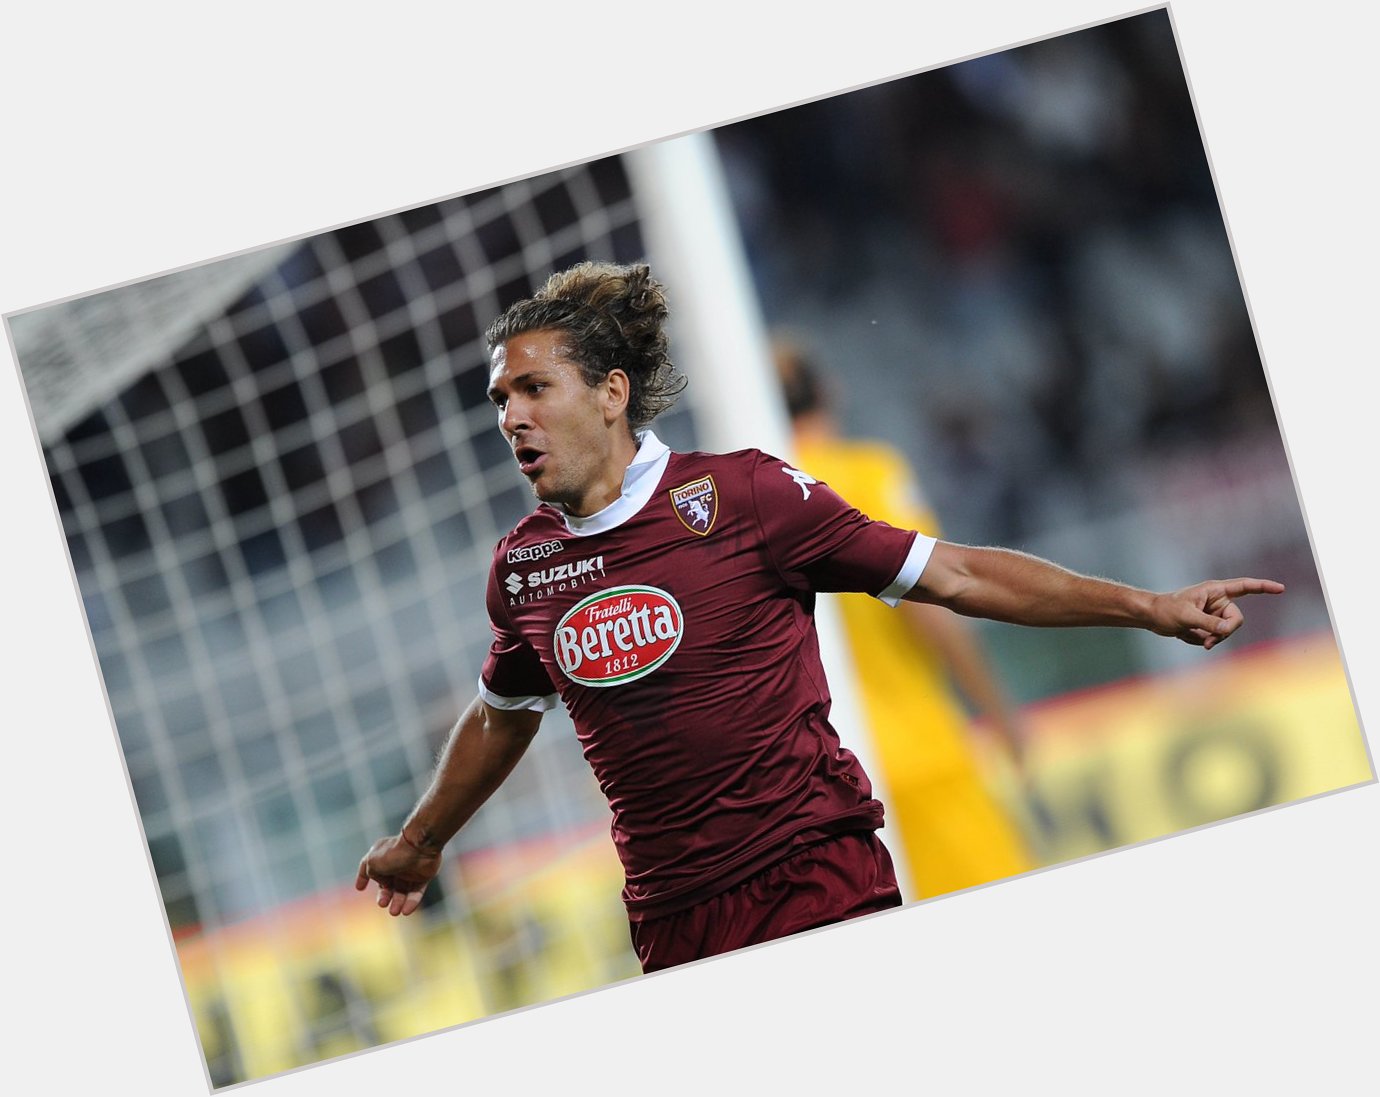  33  In granata:  2 seasons 73 caps  21 goals Happy birthday to Alessio Cerci! 